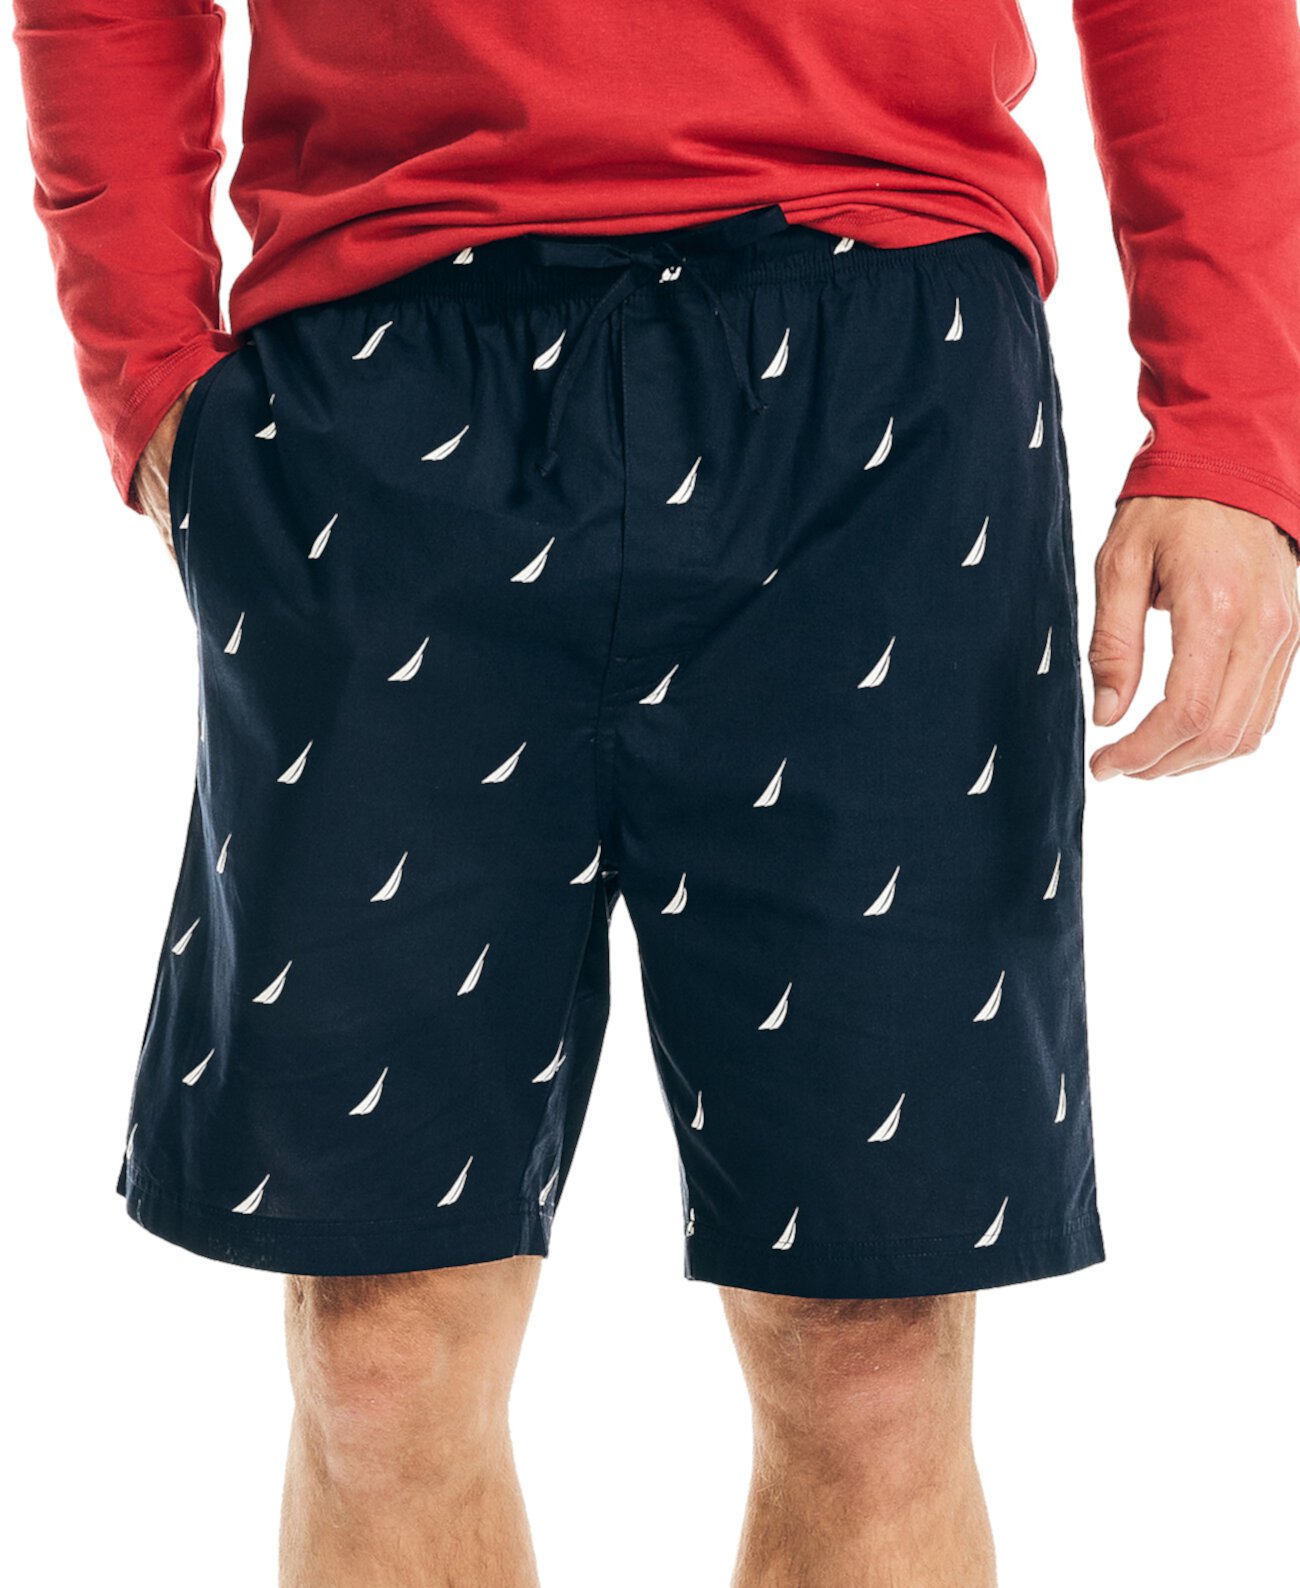 Мужские пижамные шорты с подписью Nautica